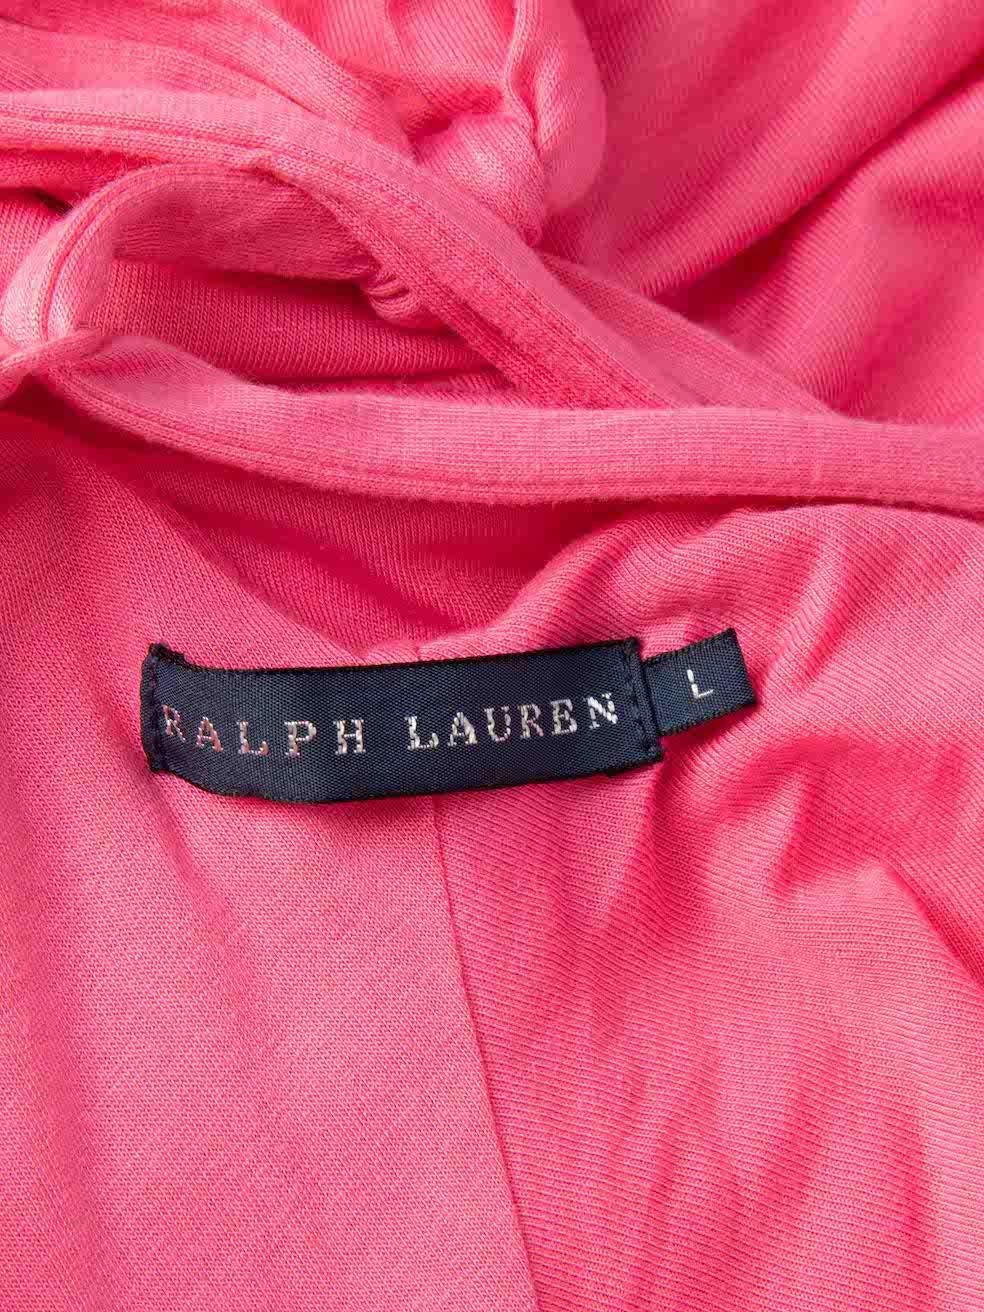 Ralph Lauren Women's Pink Sleeveless Strappy Summer Dress 1